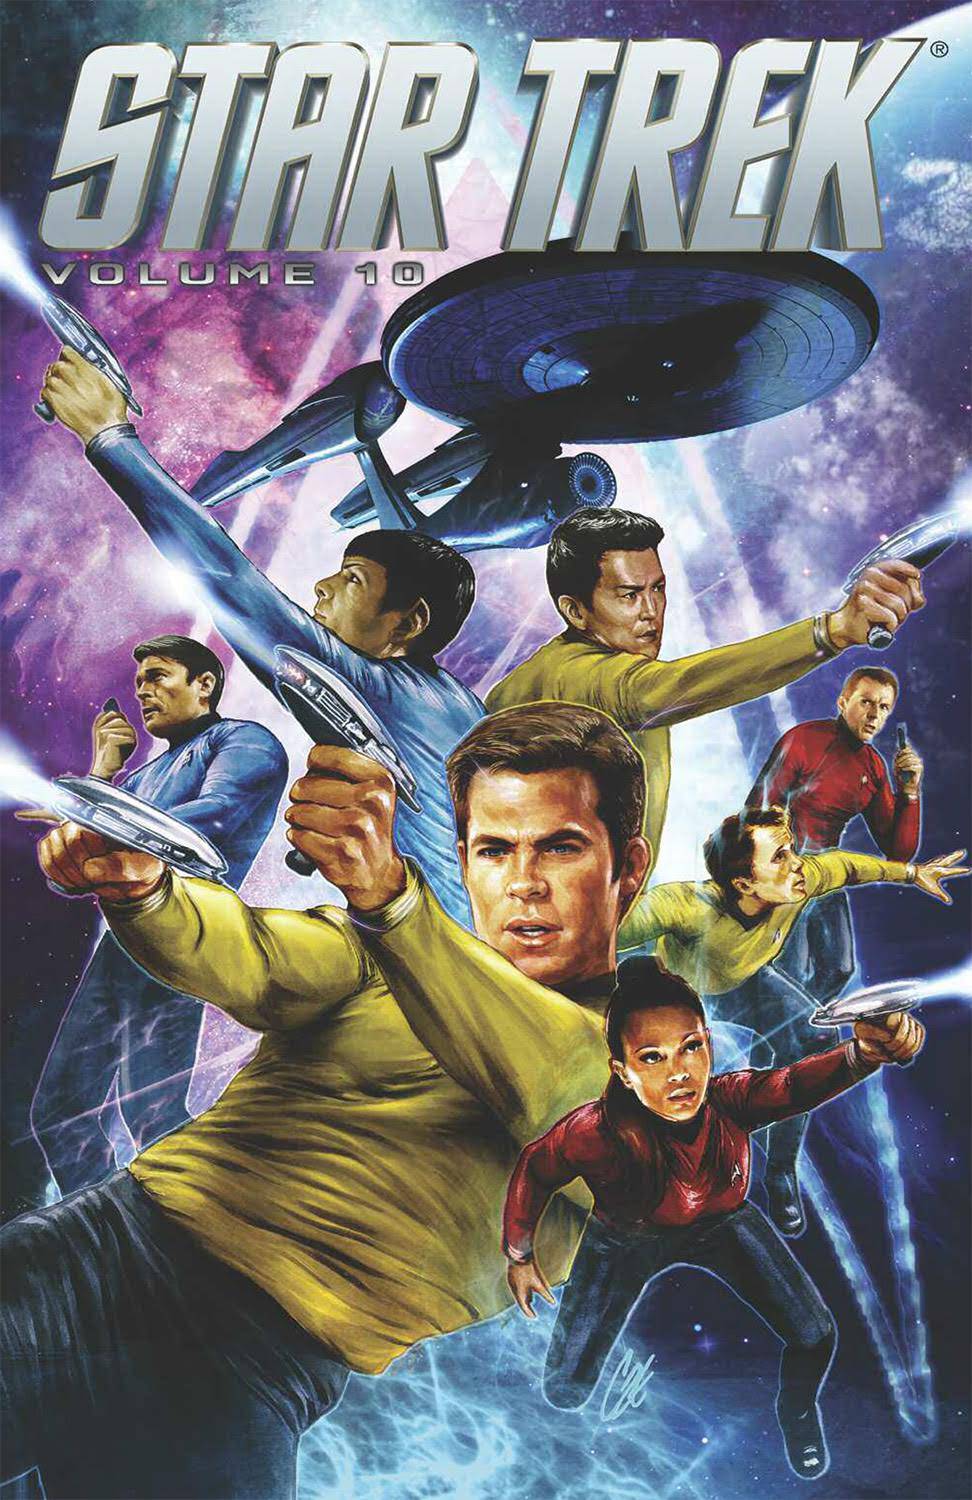 Star Trek Ongoing Graphic Novel Volume 10